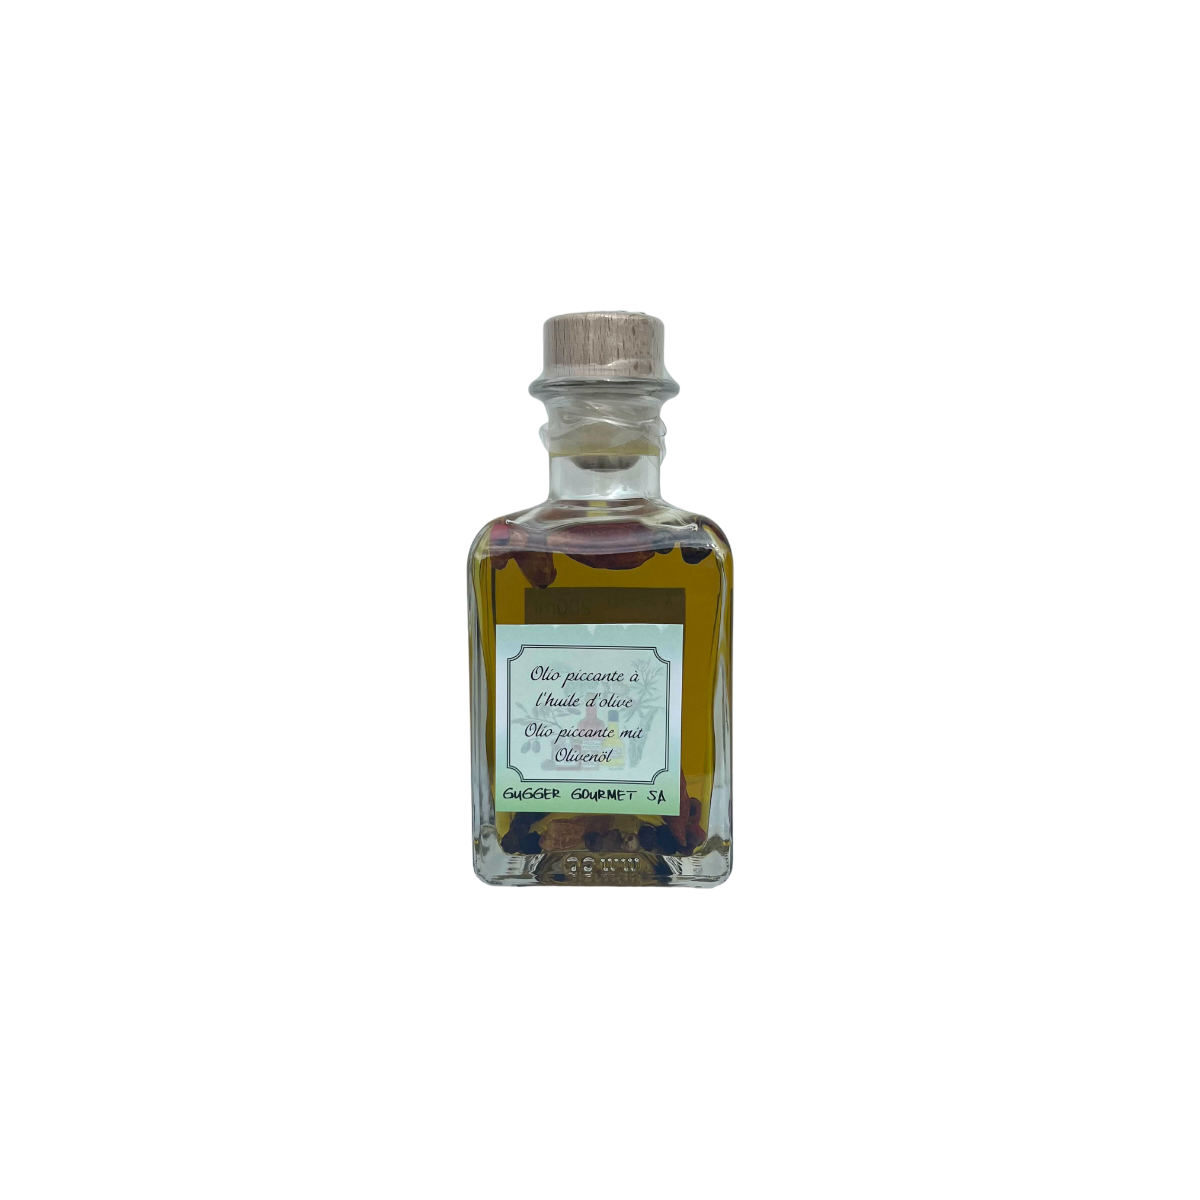 Olio piccante con olio d'oliva